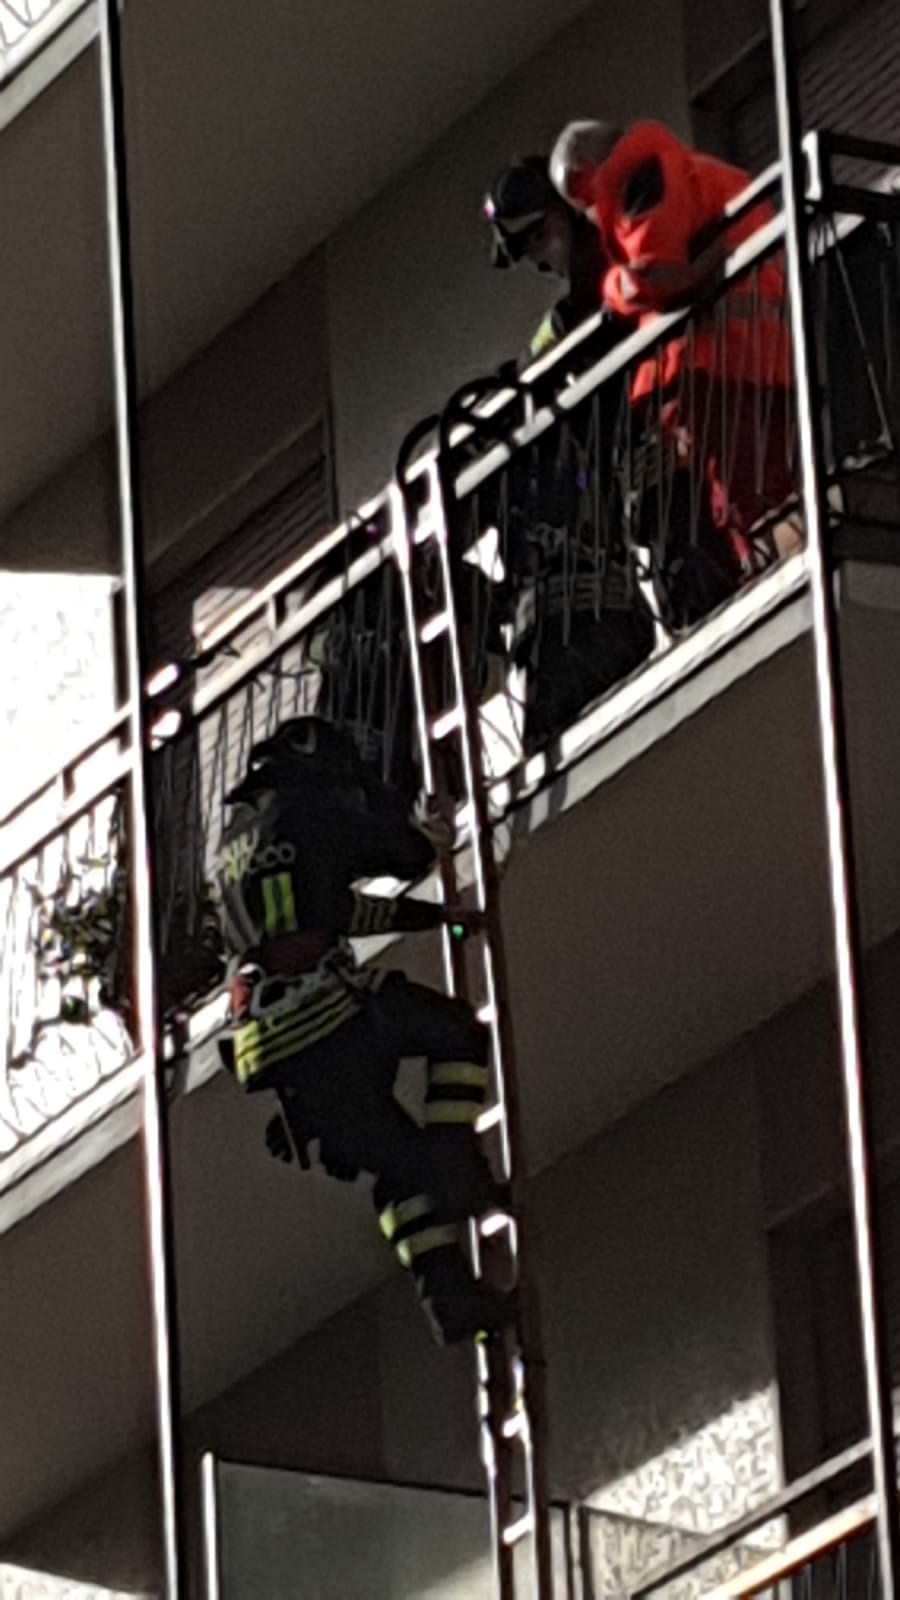 Ieri su ilSaronno: pompieri “scalano” palazzo tra i banchi del mercato, giornata delle memoria, doppio cantiere in centro, arresto a Solaro